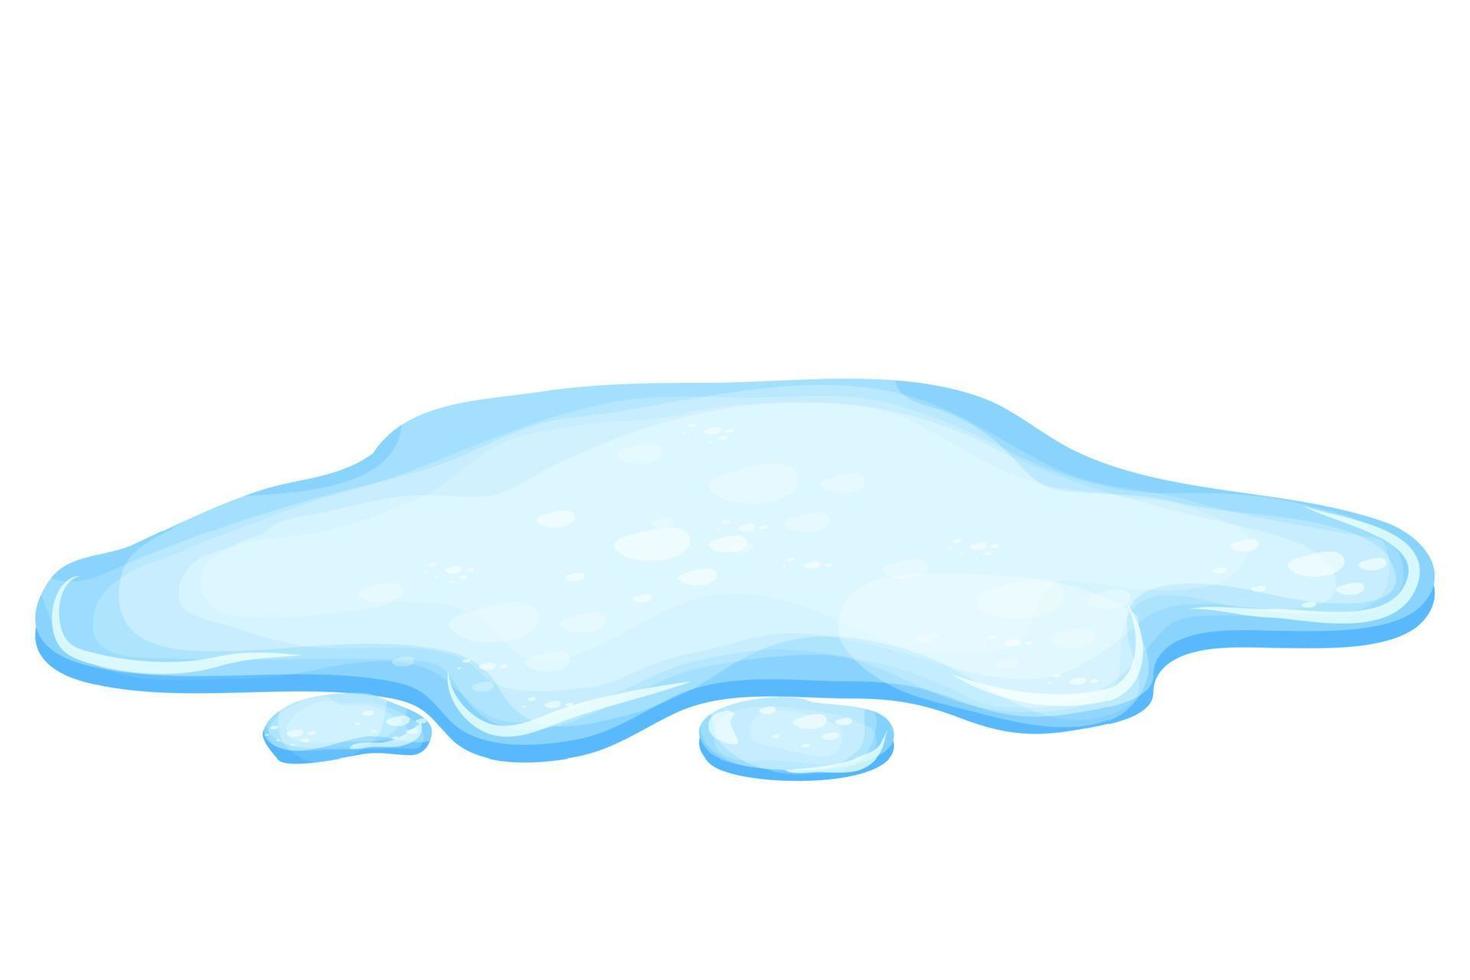 vattenpöl i tecknad stil isolerad på vit bakgrund. spill, sjö eller vätska. designelement. säsongsbetonat objekt. vektor illustration